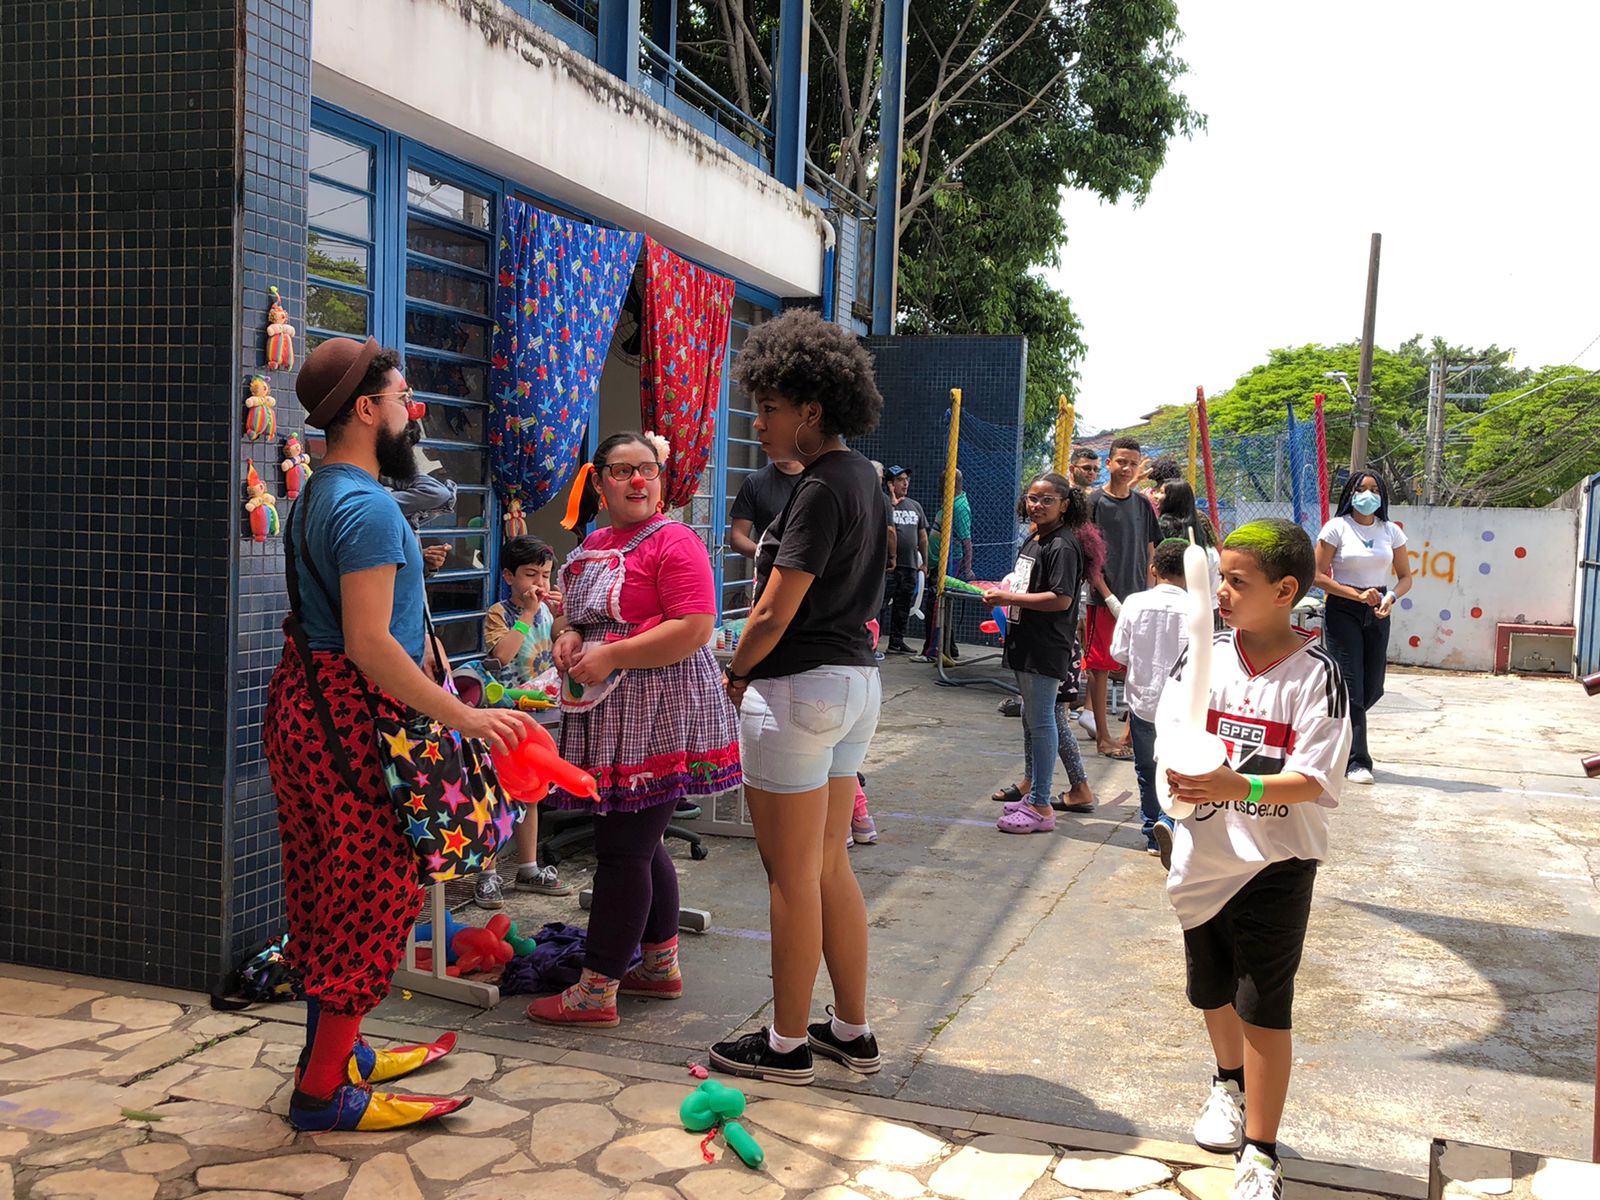 Sindicato dos Comerciários de São Paulo e Associação Ponte Brasilitalia comemoram dia das crianças